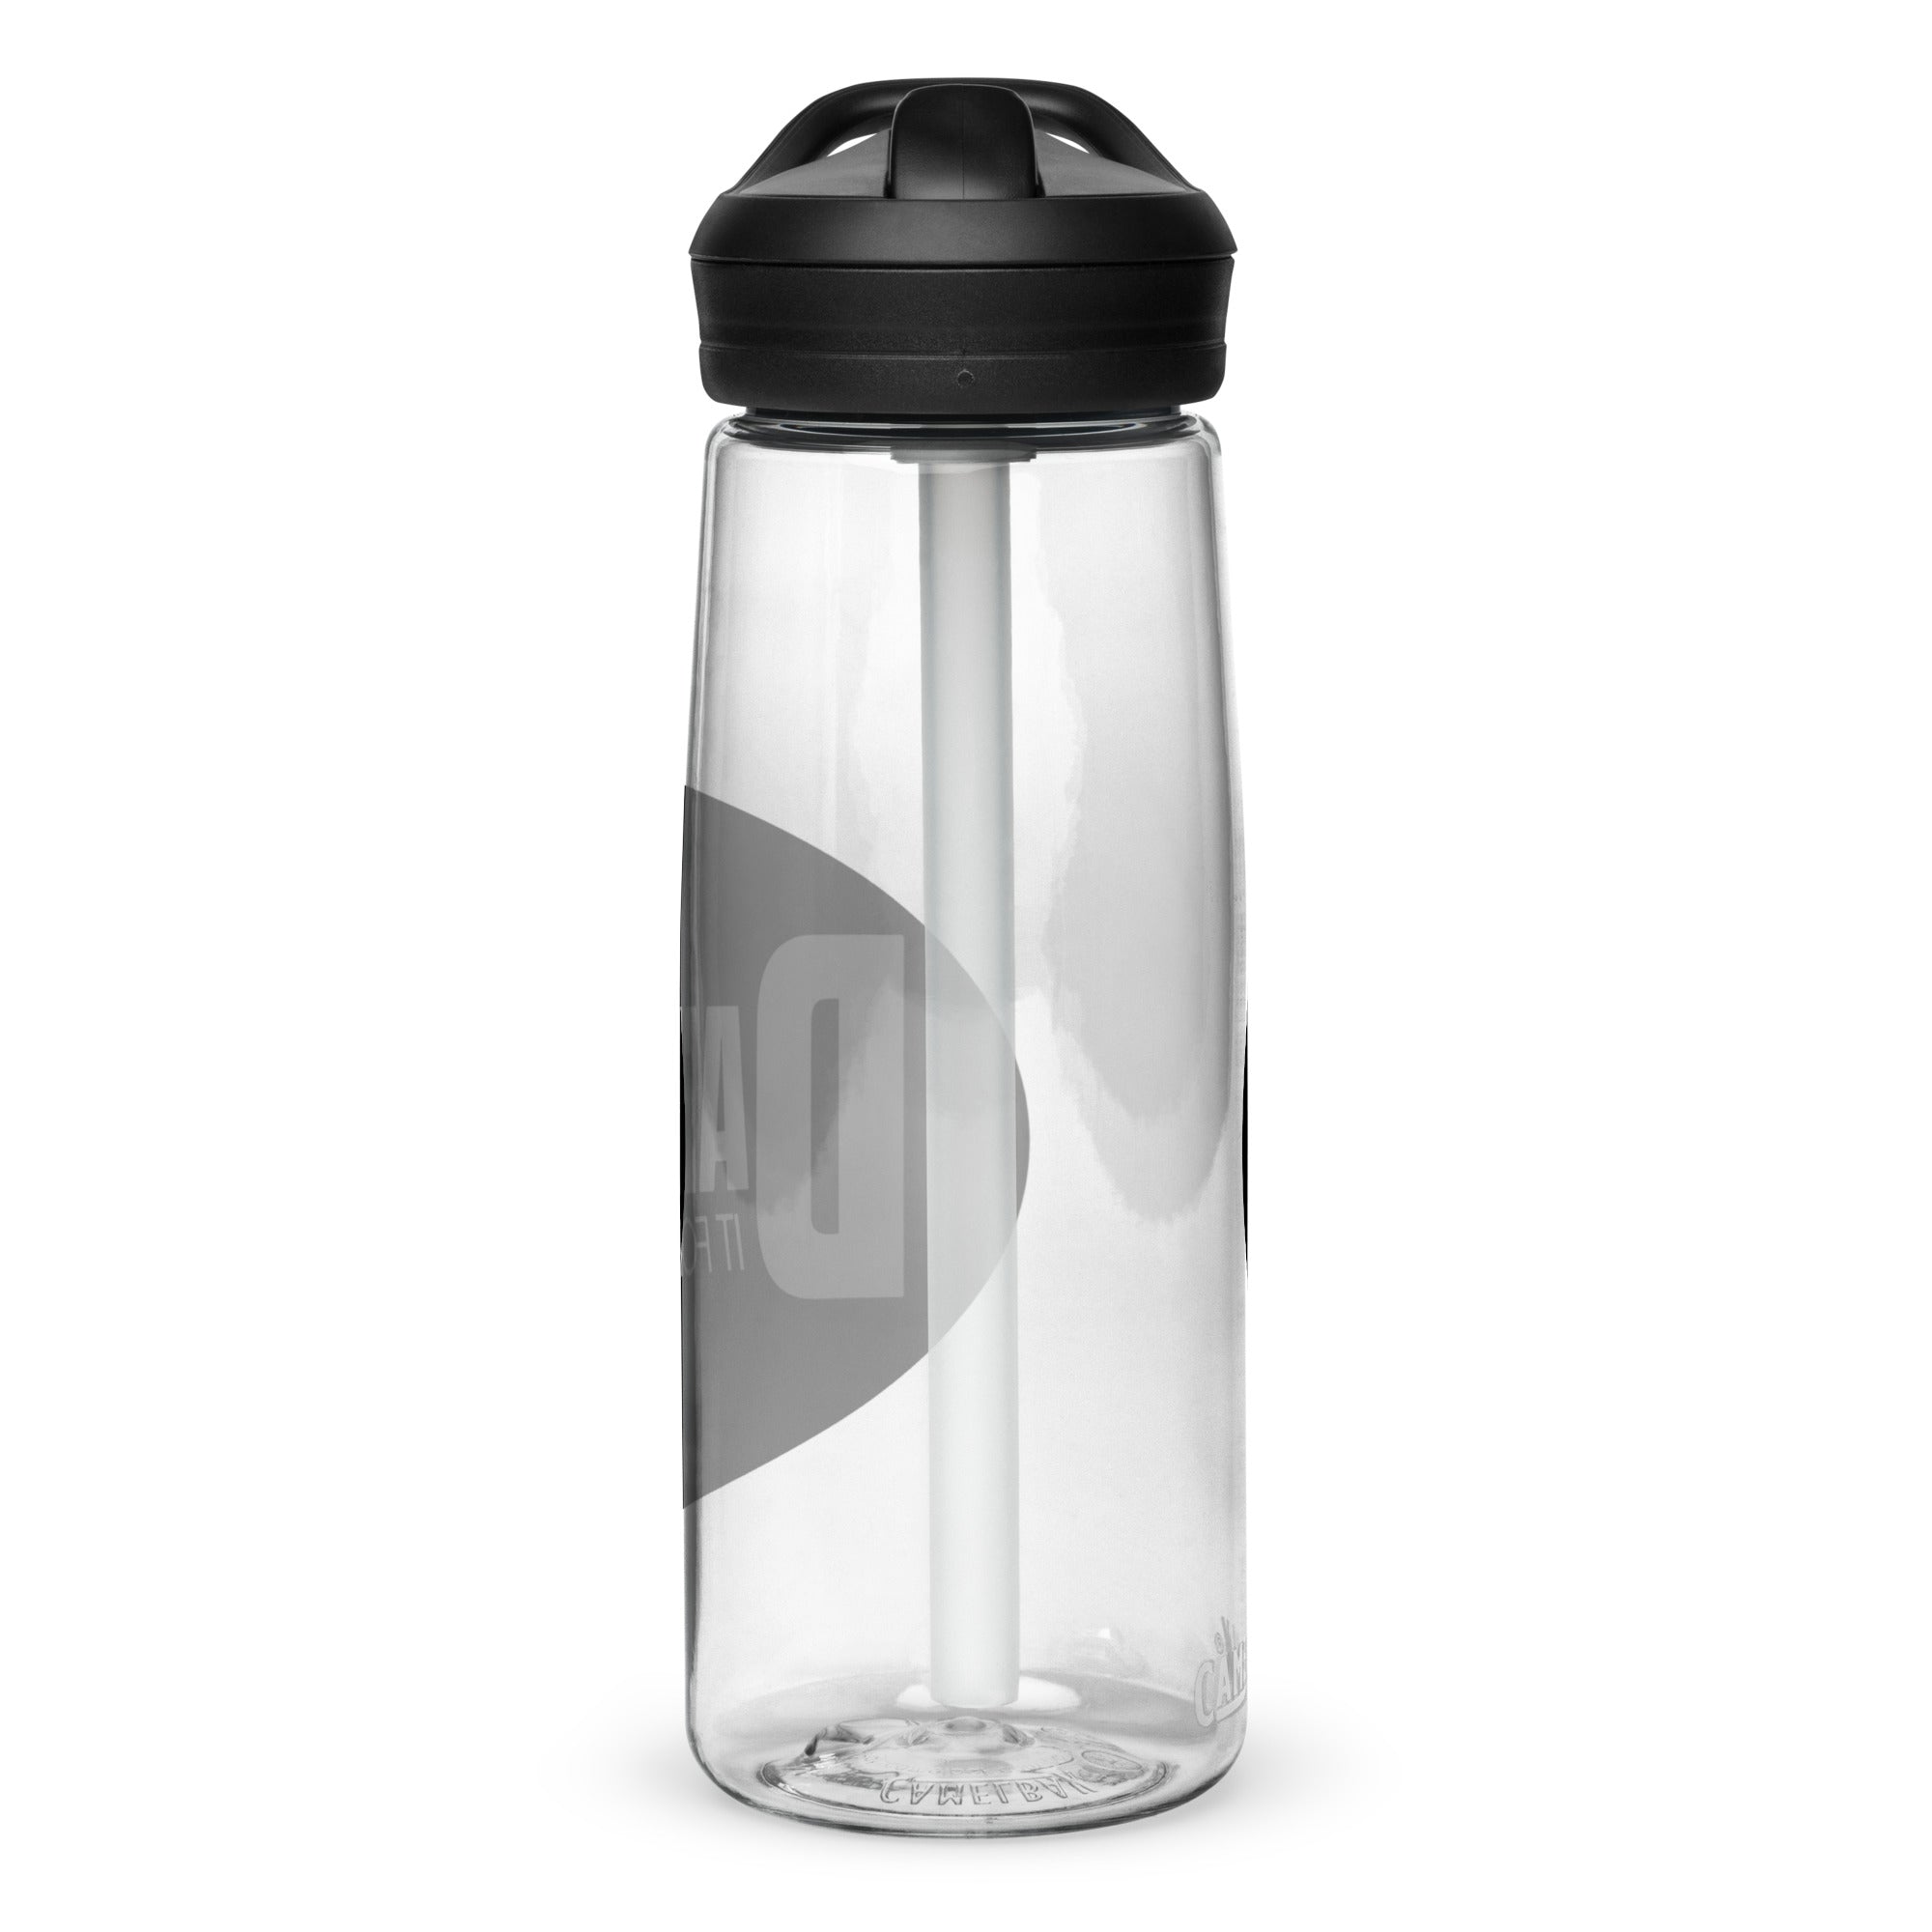 DIF/GYD Sports water bottle